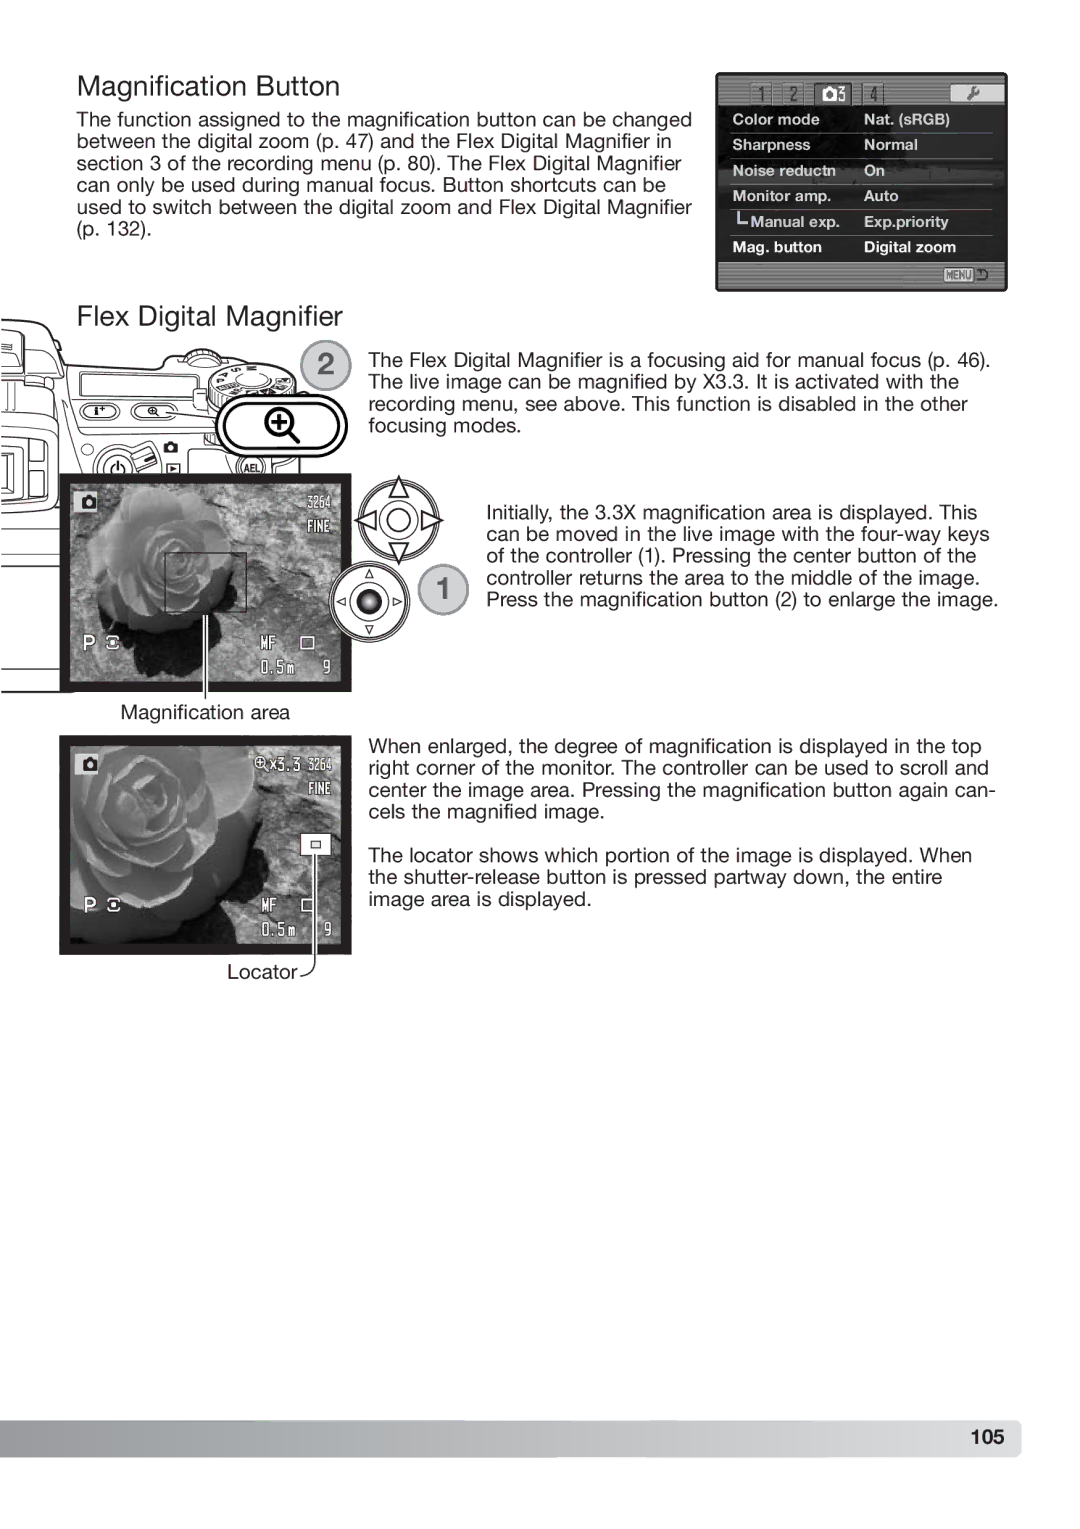 Konica Minolta DiMAGE_A2 instruction manual Magnification Button, Flex Digital Magnifier, 105 